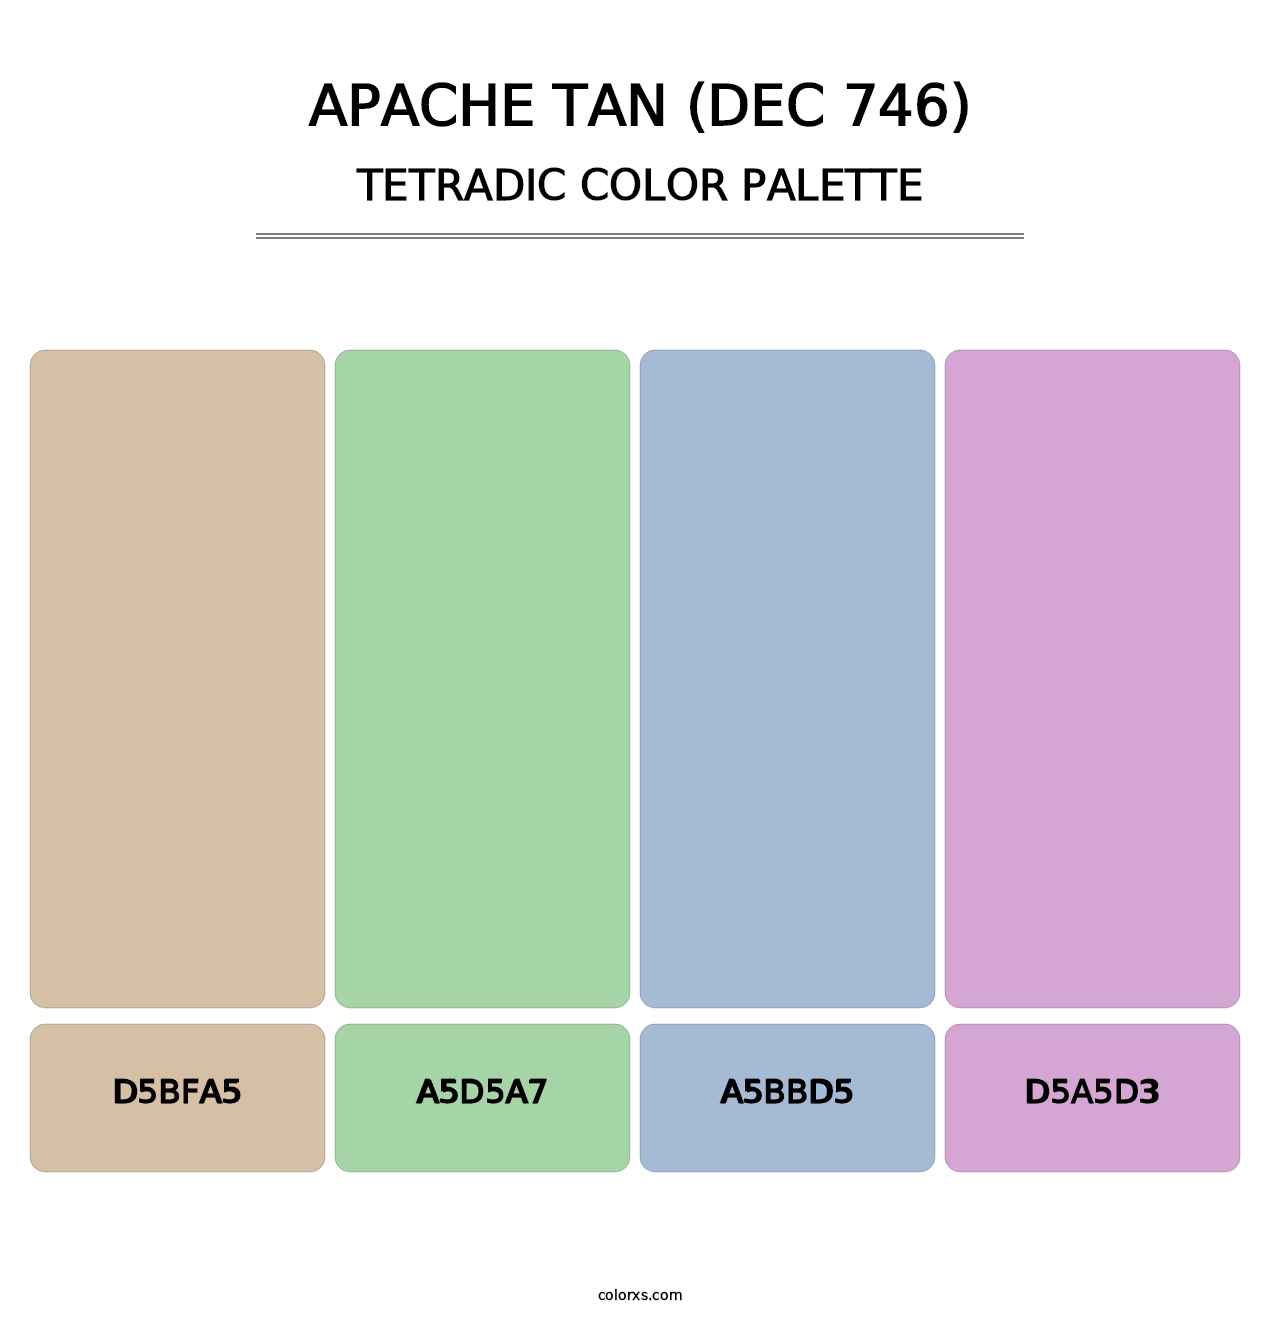 Apache Tan (DEC 746) - Tetradic Color Palette